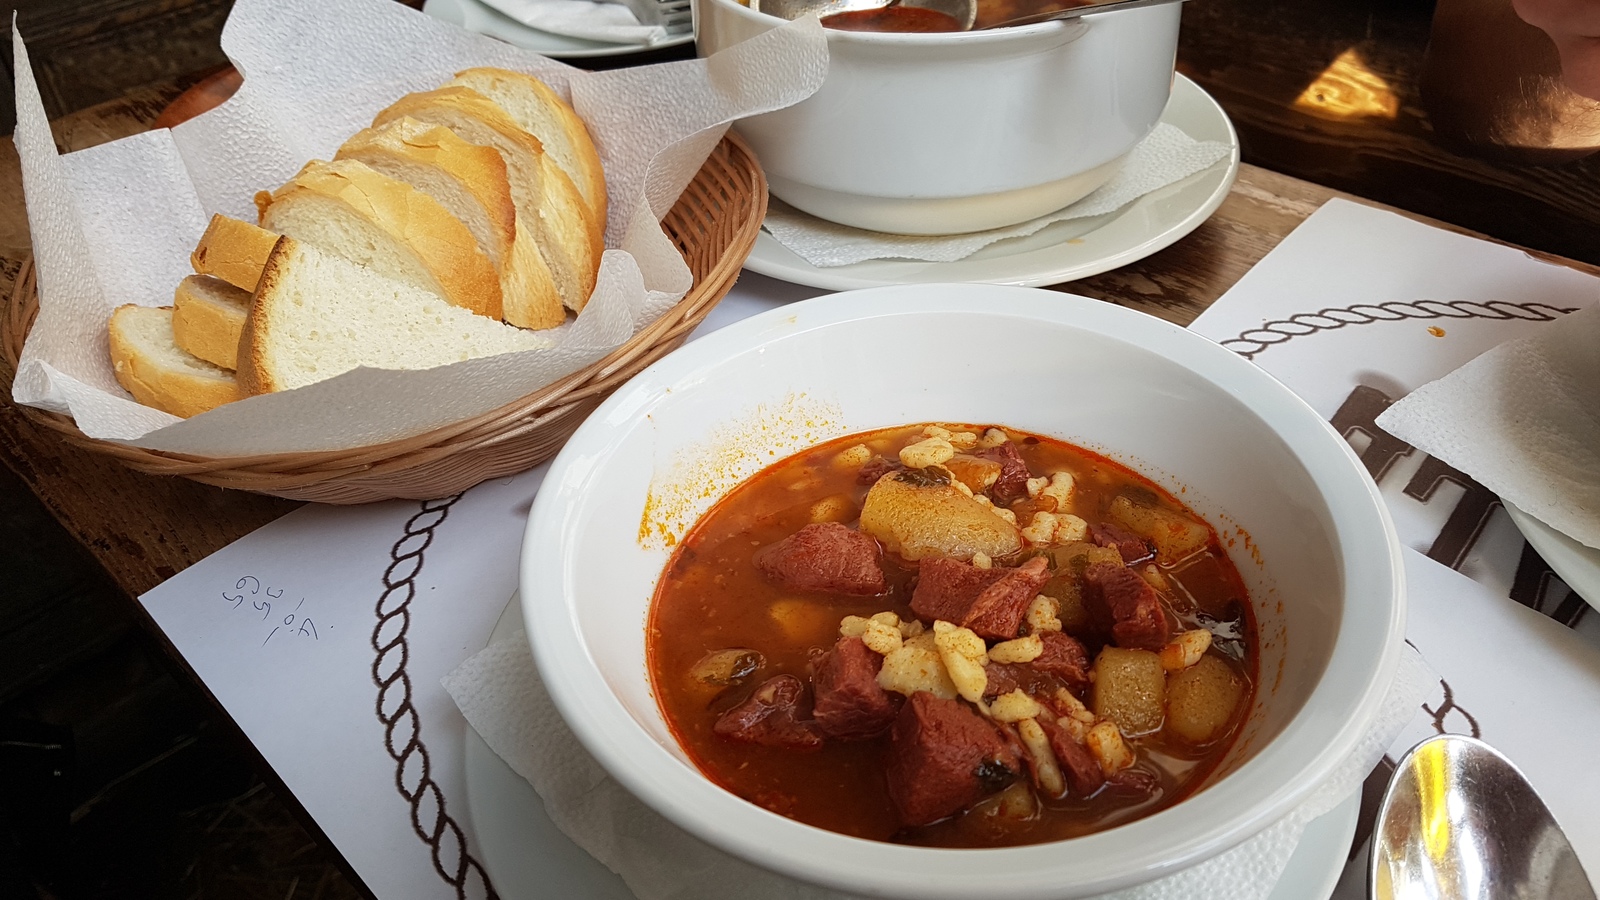 Суп гуляш венгерский классический рецепт с фото